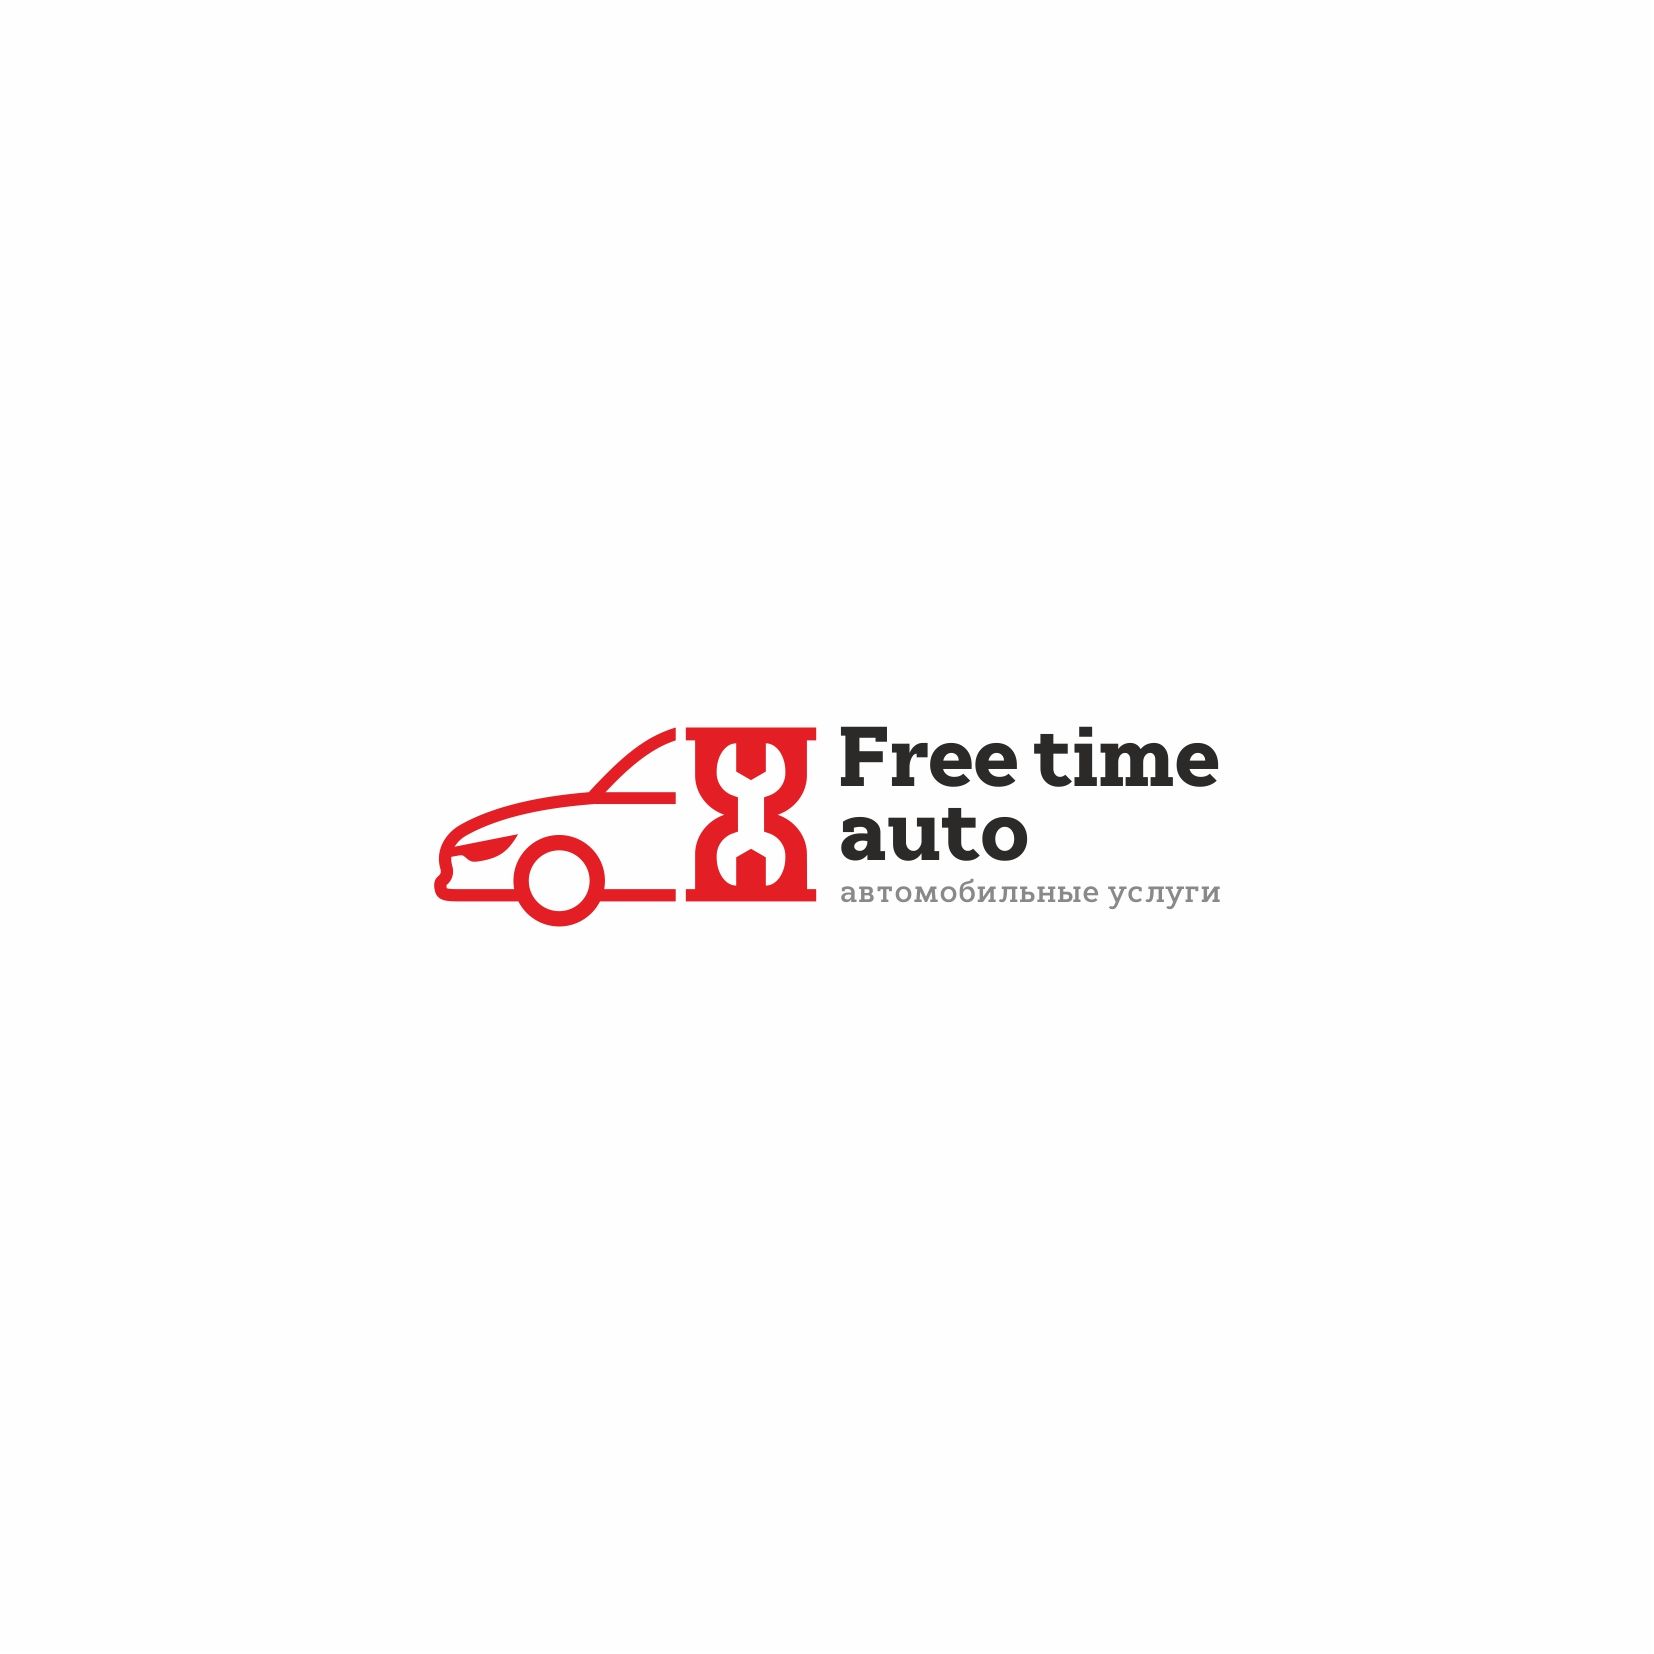 Логотип для Free Time Auto (автомобильные услуги) - дизайнер kirillenkov